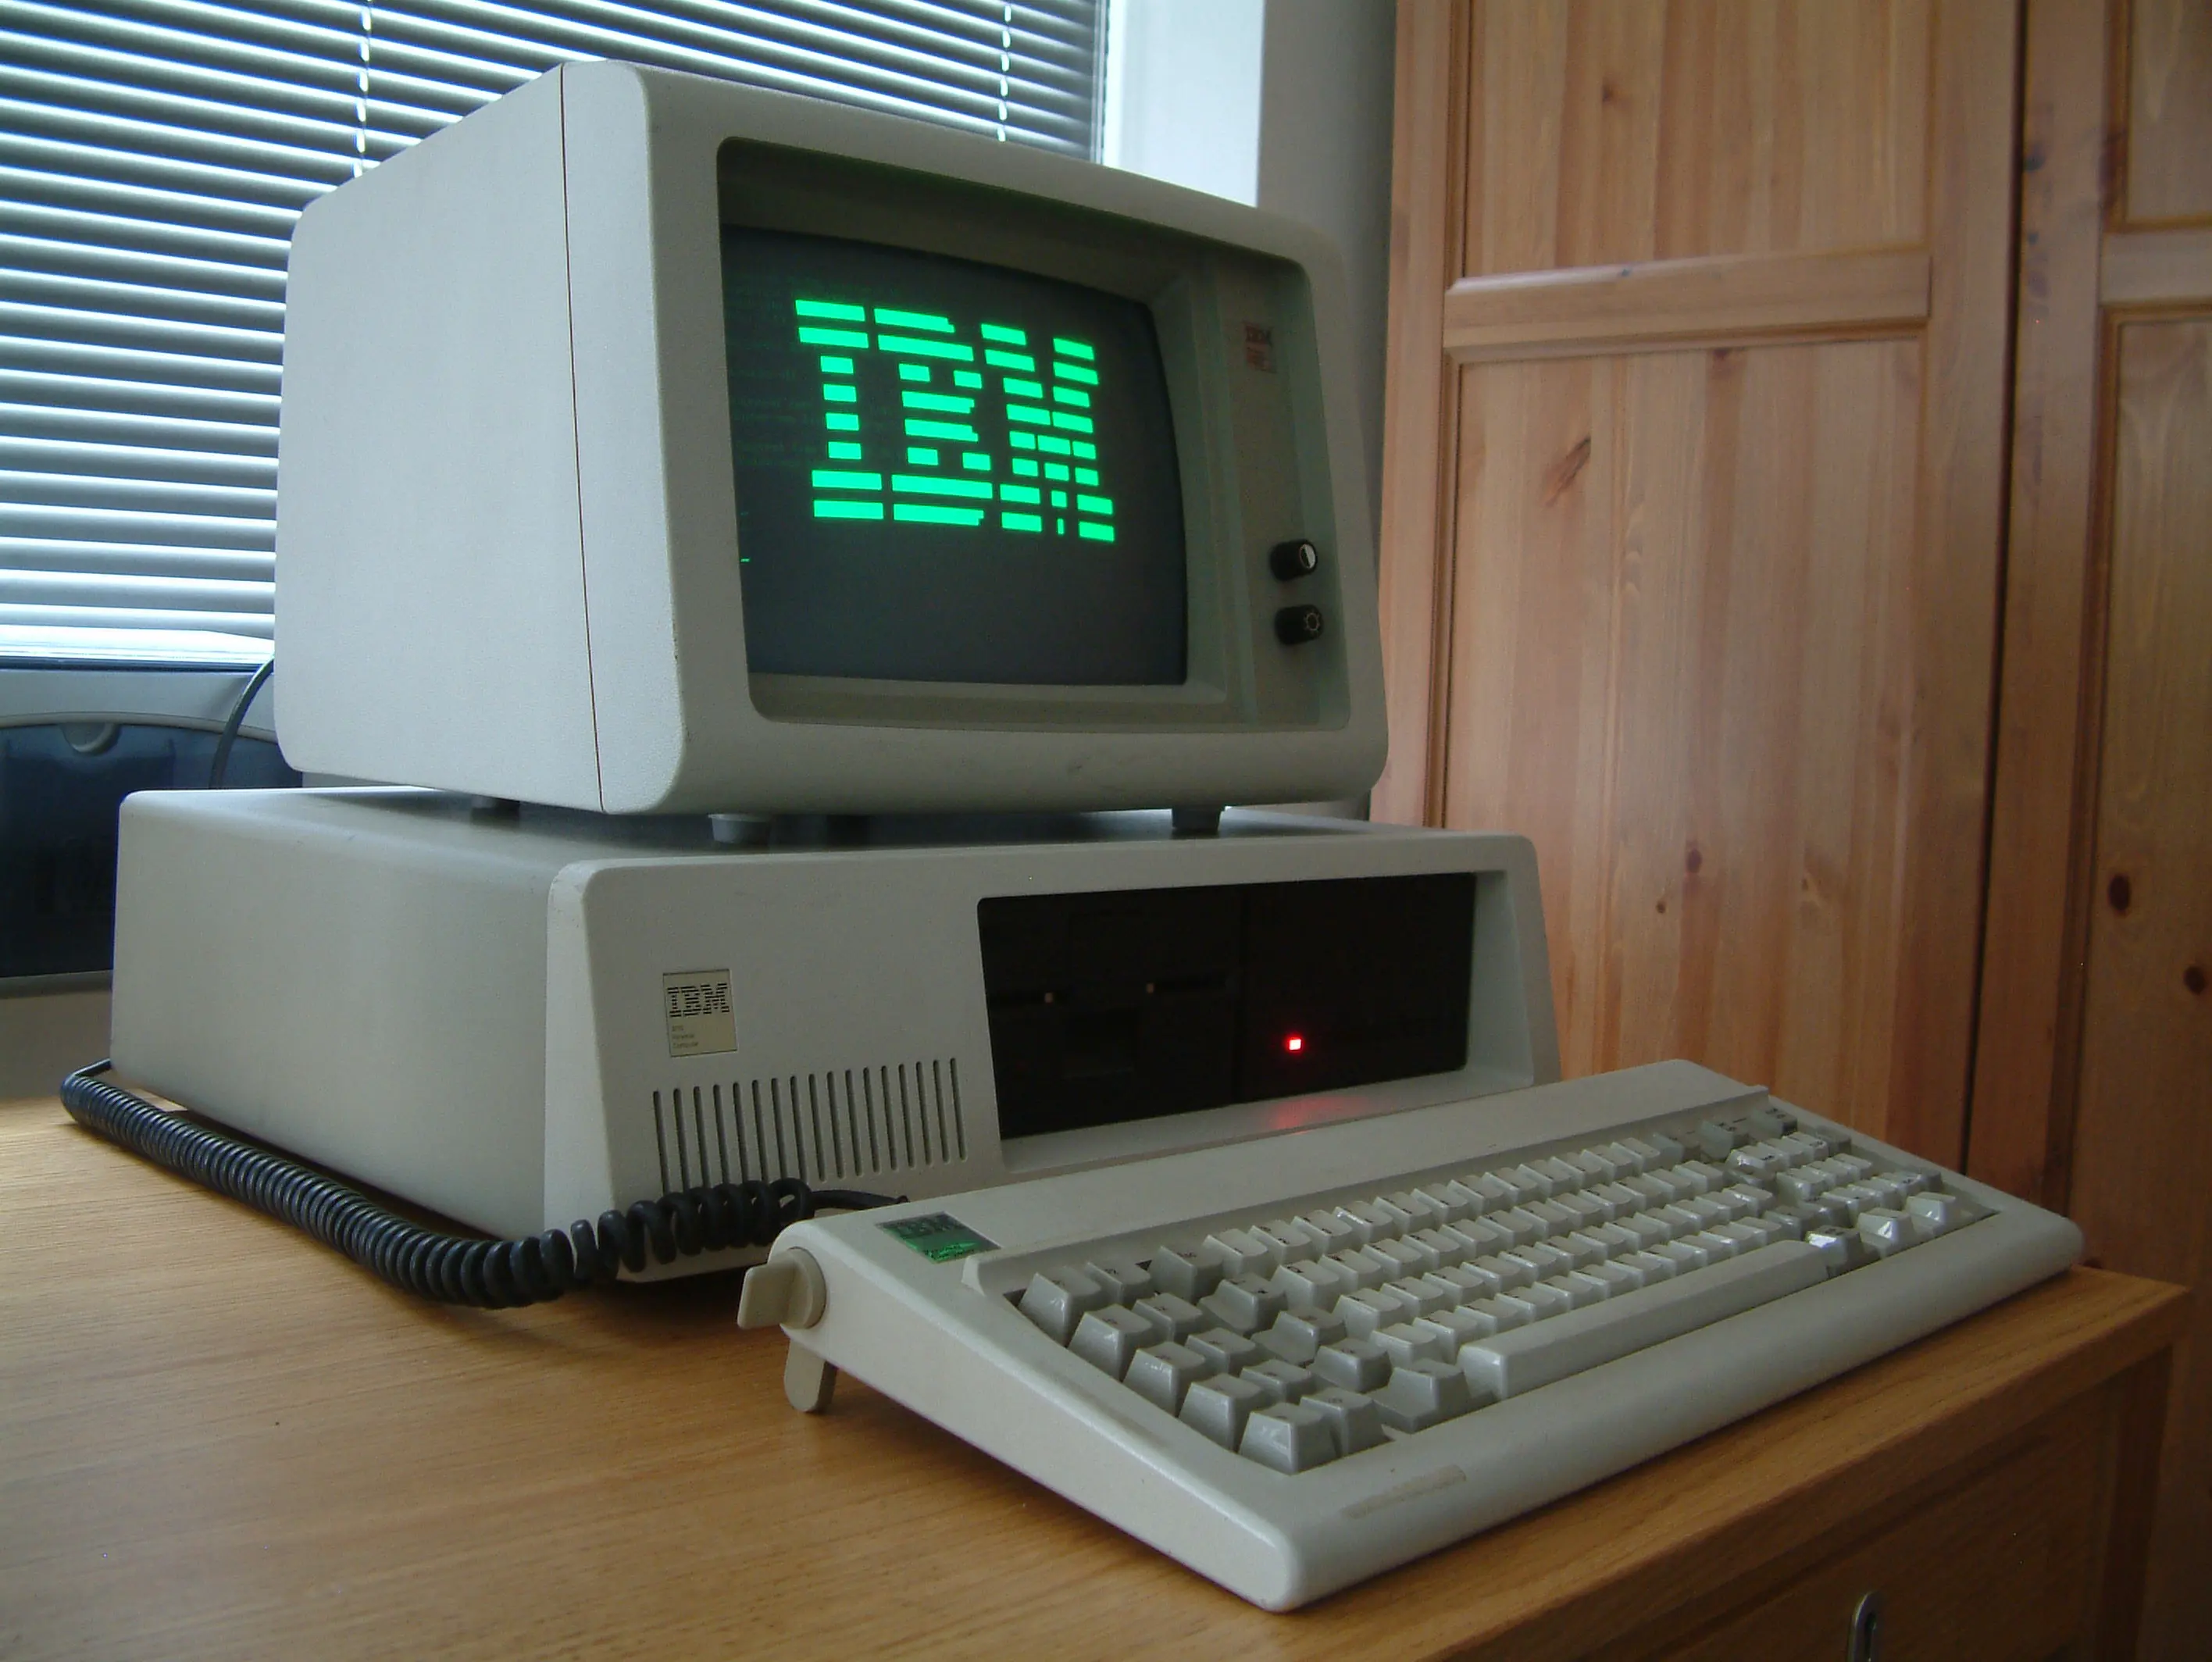 图 09. 一台配备了 5151 型绿色显示器的 IBM 个人电脑 | 荒原之梦